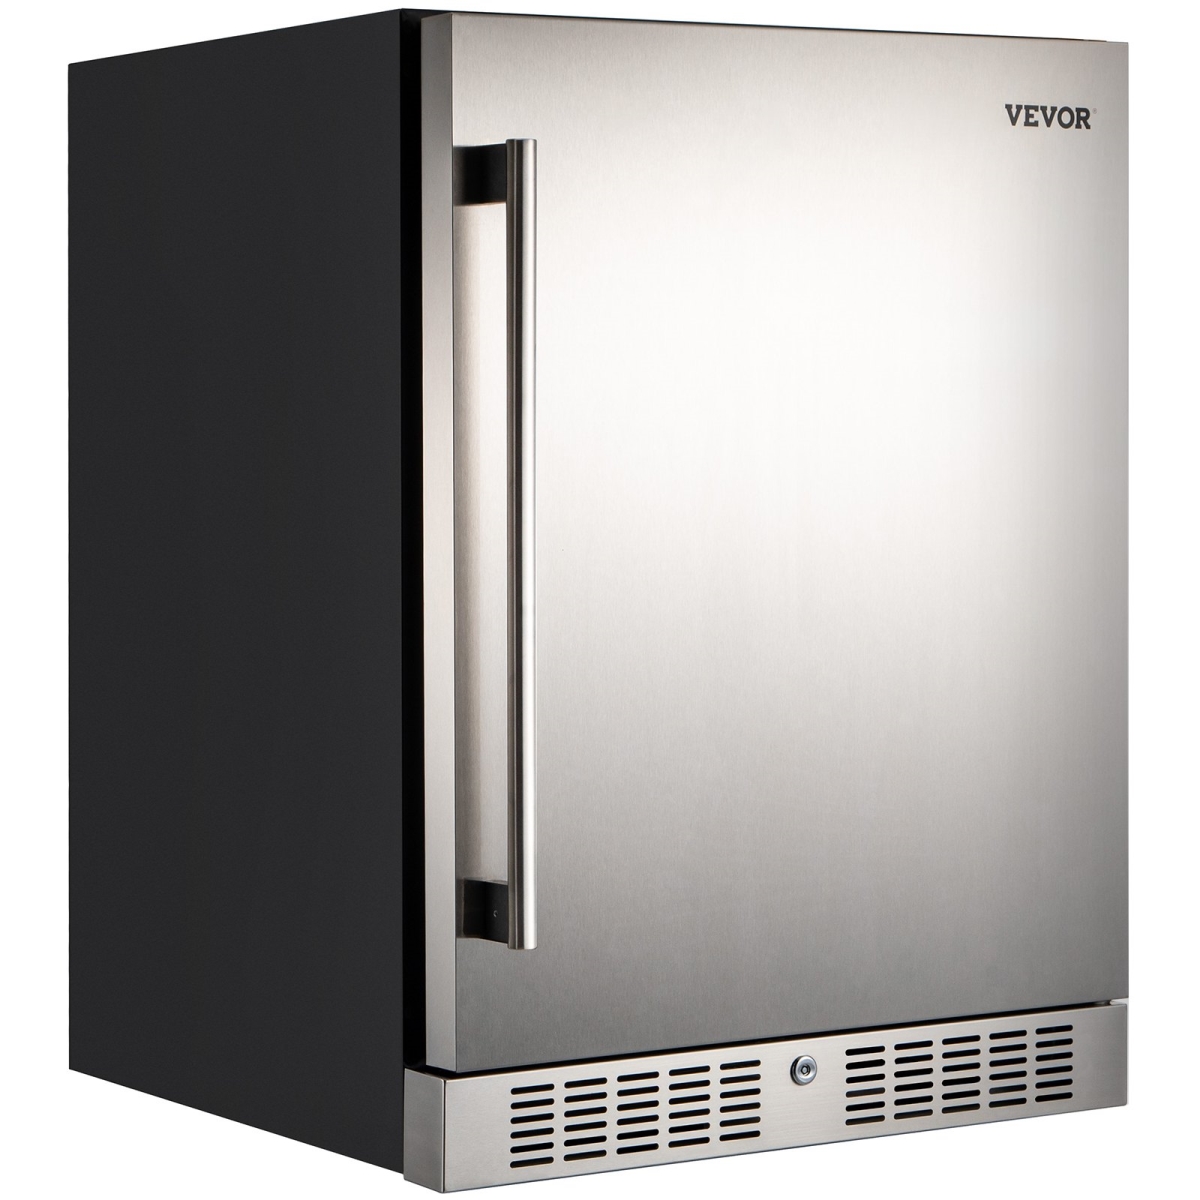 Picture of Vevor BX-QRSBXSNY150L01V1 24 in. Built-in Beverage Cooler - 5.3 cu.ft. Stainless Steel Beverage Refrigerator 150L - Black & Silver